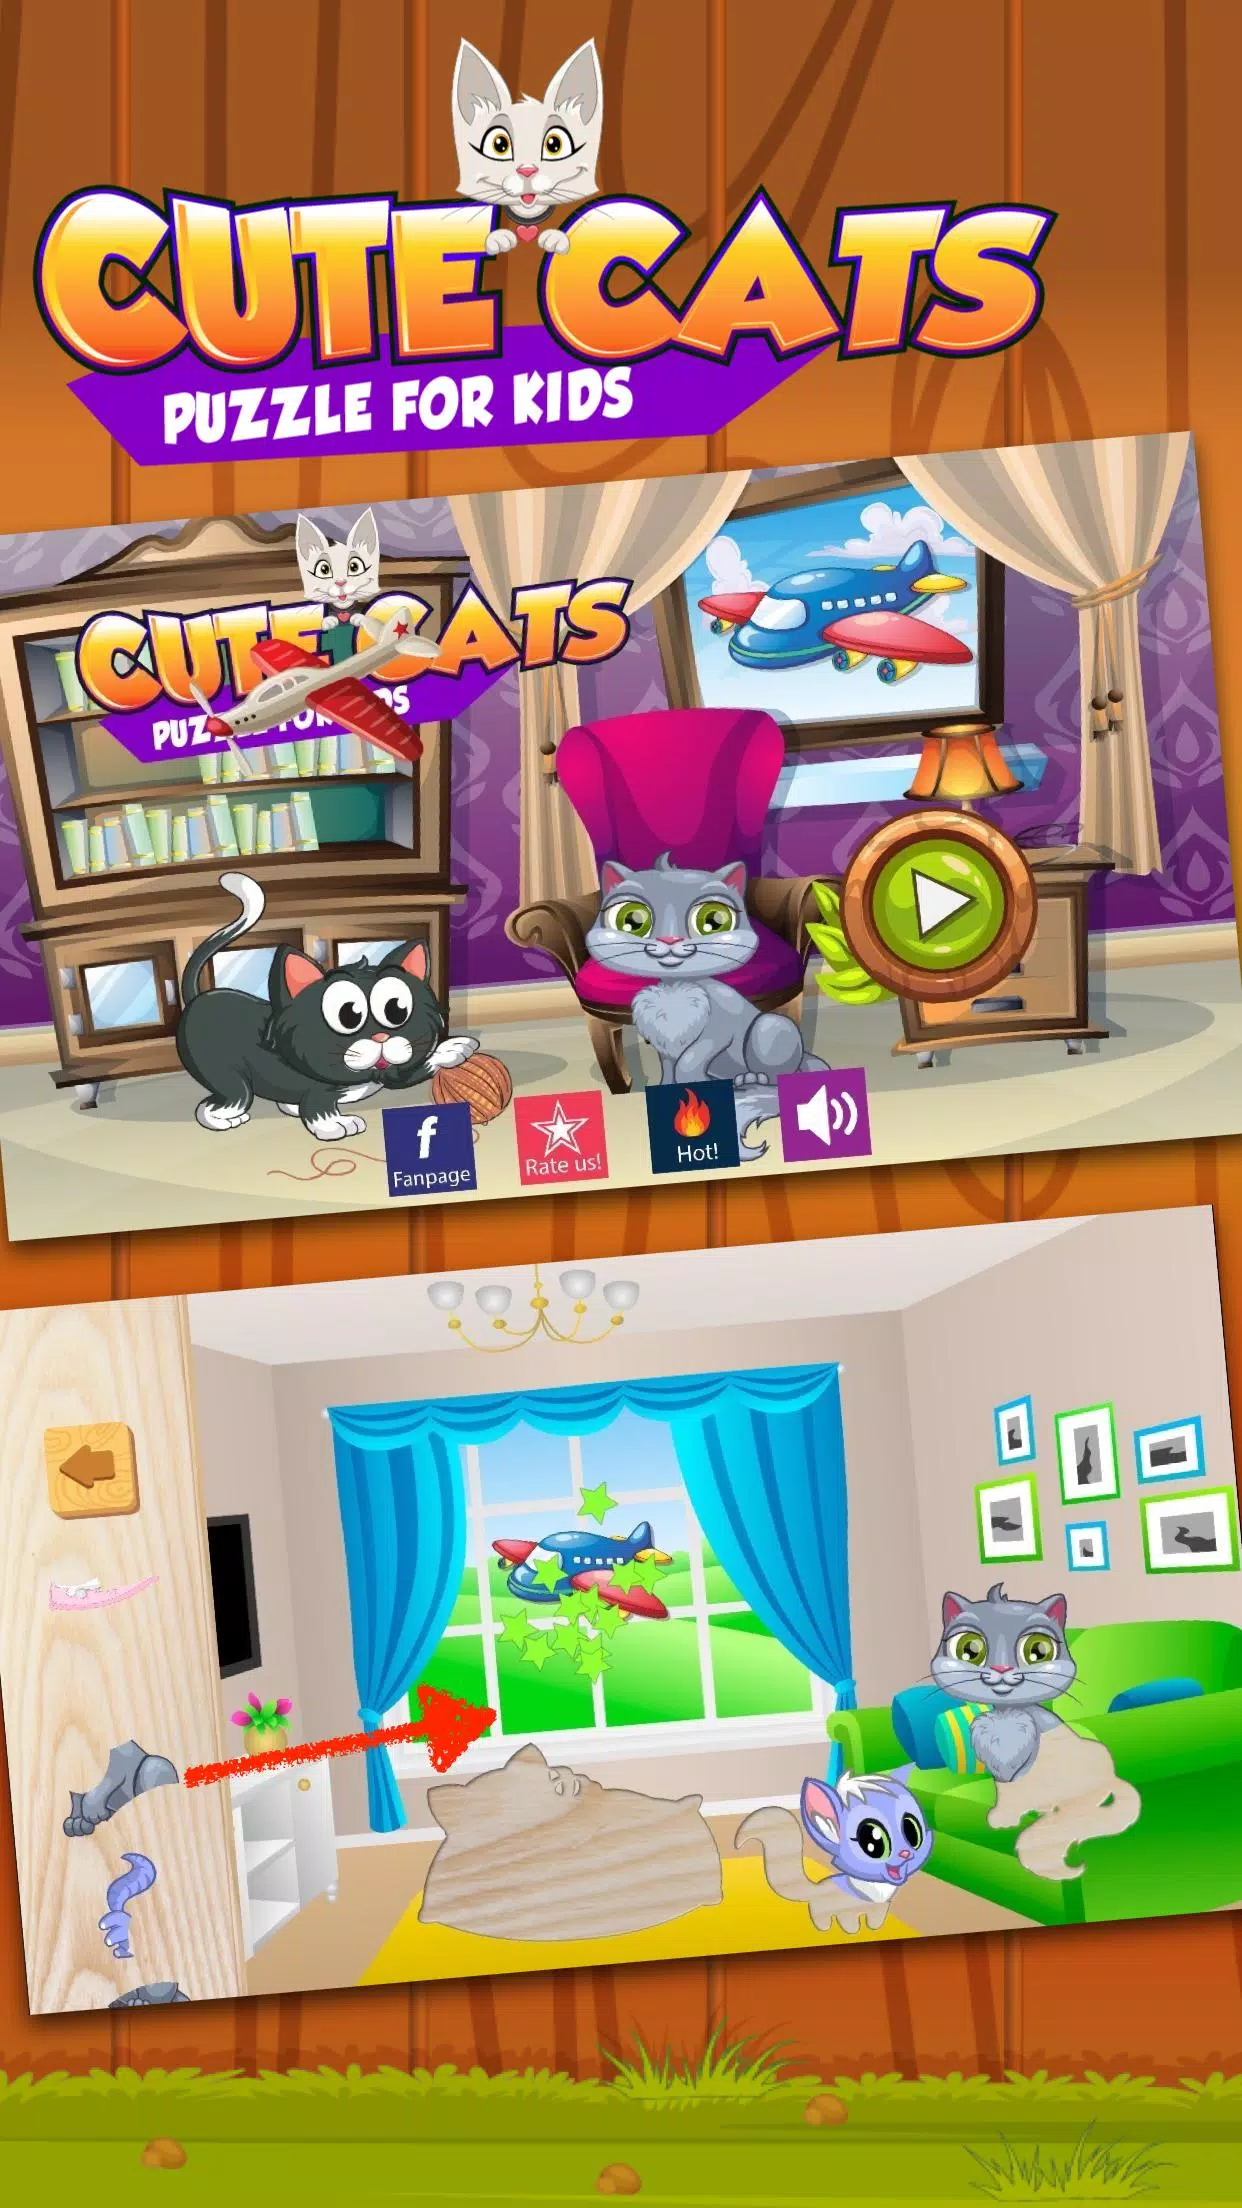 Android 用の かわいいねこ 子猫 のパズルゲーム 簡単ゲームアプリ幼児向け無料ゲーム Apk をダウンロード